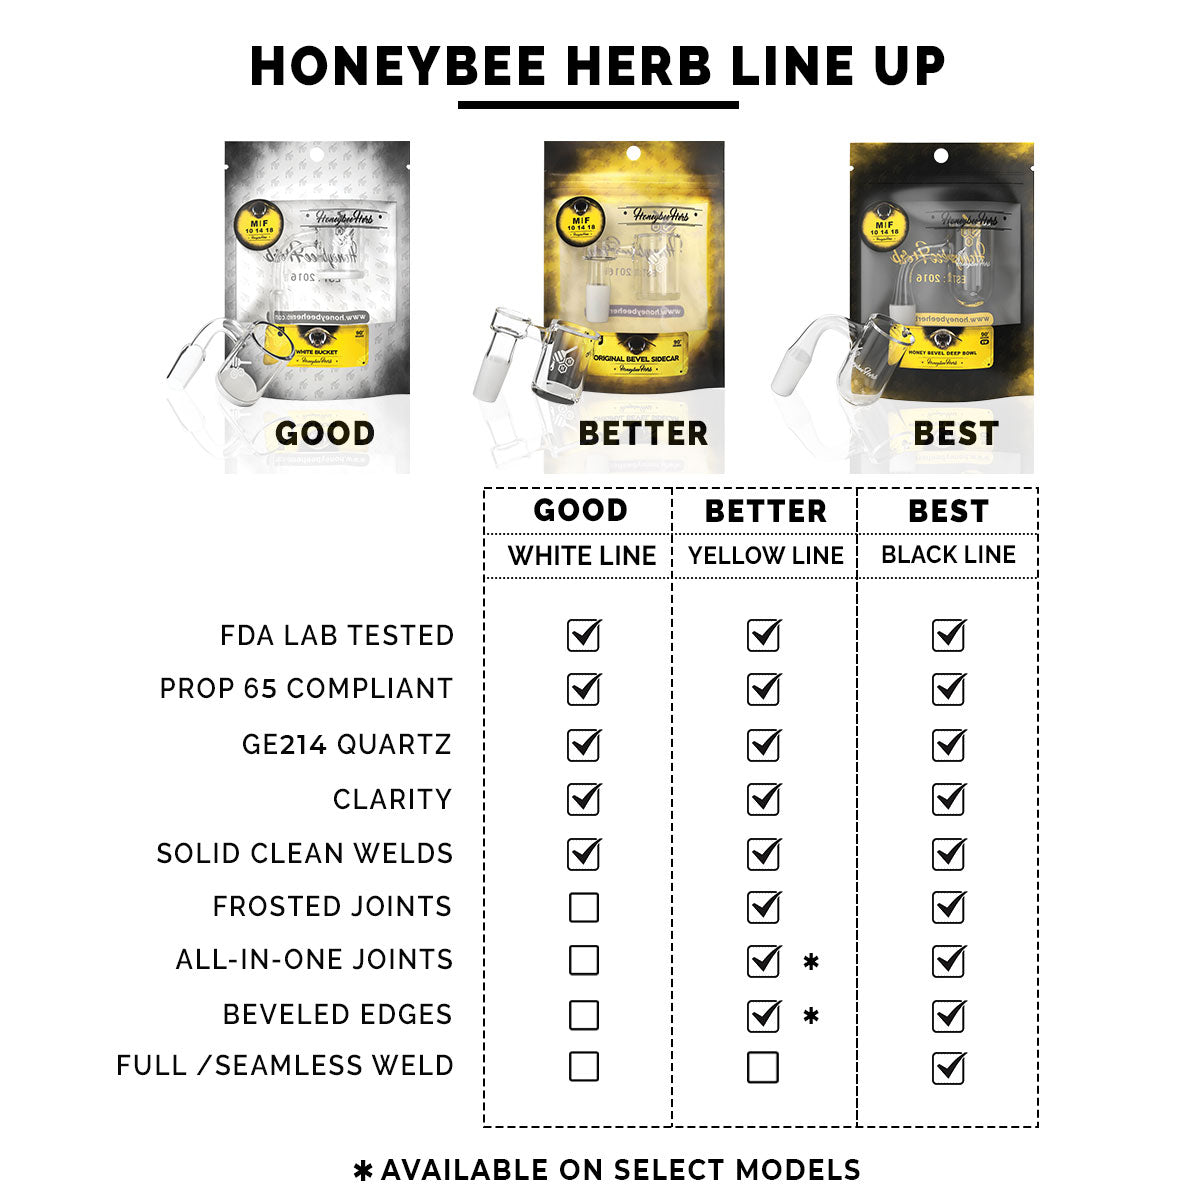 Honeybee Herb quartz banger lineup chart showing features for Good, Better, Best categories.